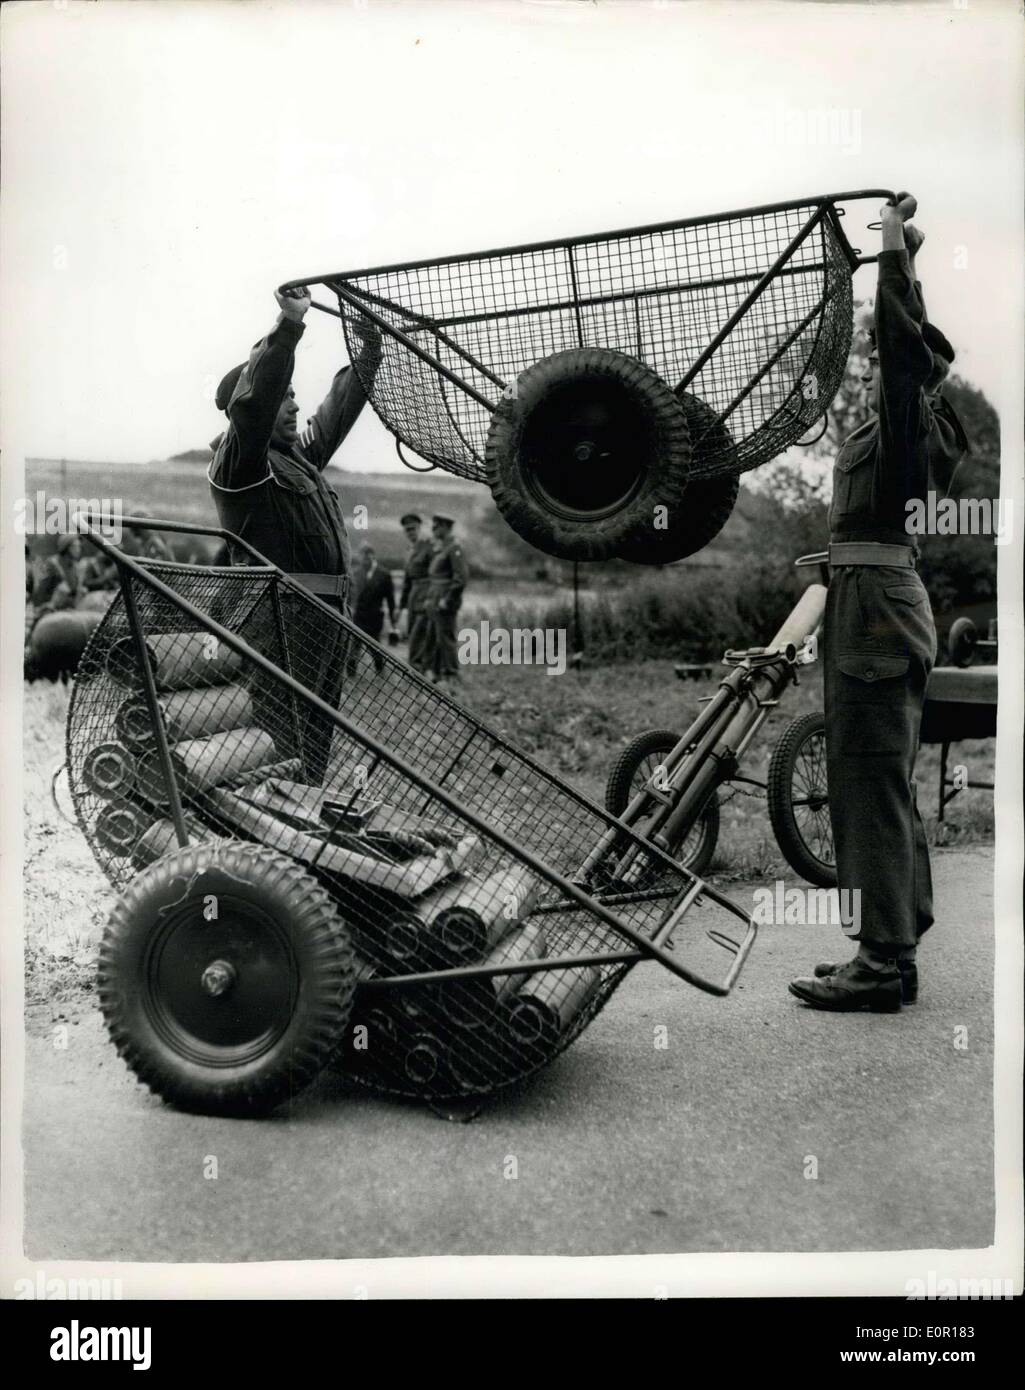 Septembre 11, 1957 - Nouveau matériel de transport de l'armée fait preuve . Chariot léger pour la terre et l'utilisation de l'eau. : Une manifestation a eu lieu au Camp Bulford Wiltshire, hier, de trois types de chariots de transport conçu par le 1er. La Division d'infanterie pour déplacer de lourdes pièces jointes au mortier à travers le pays et plus d'obstacles d'eau. Le chariot est sous la forme d'un châssis tubulaires en métal galvanisé avec un panier en fil - et équipé de deux roues avec bandage pneumatique - qui peuvent être détachés. Ils peuvent être transformés en transport de l'eau par l'association des deux buoyanoy - sacs en plastique et recouvert d'une toile Banque D'Images